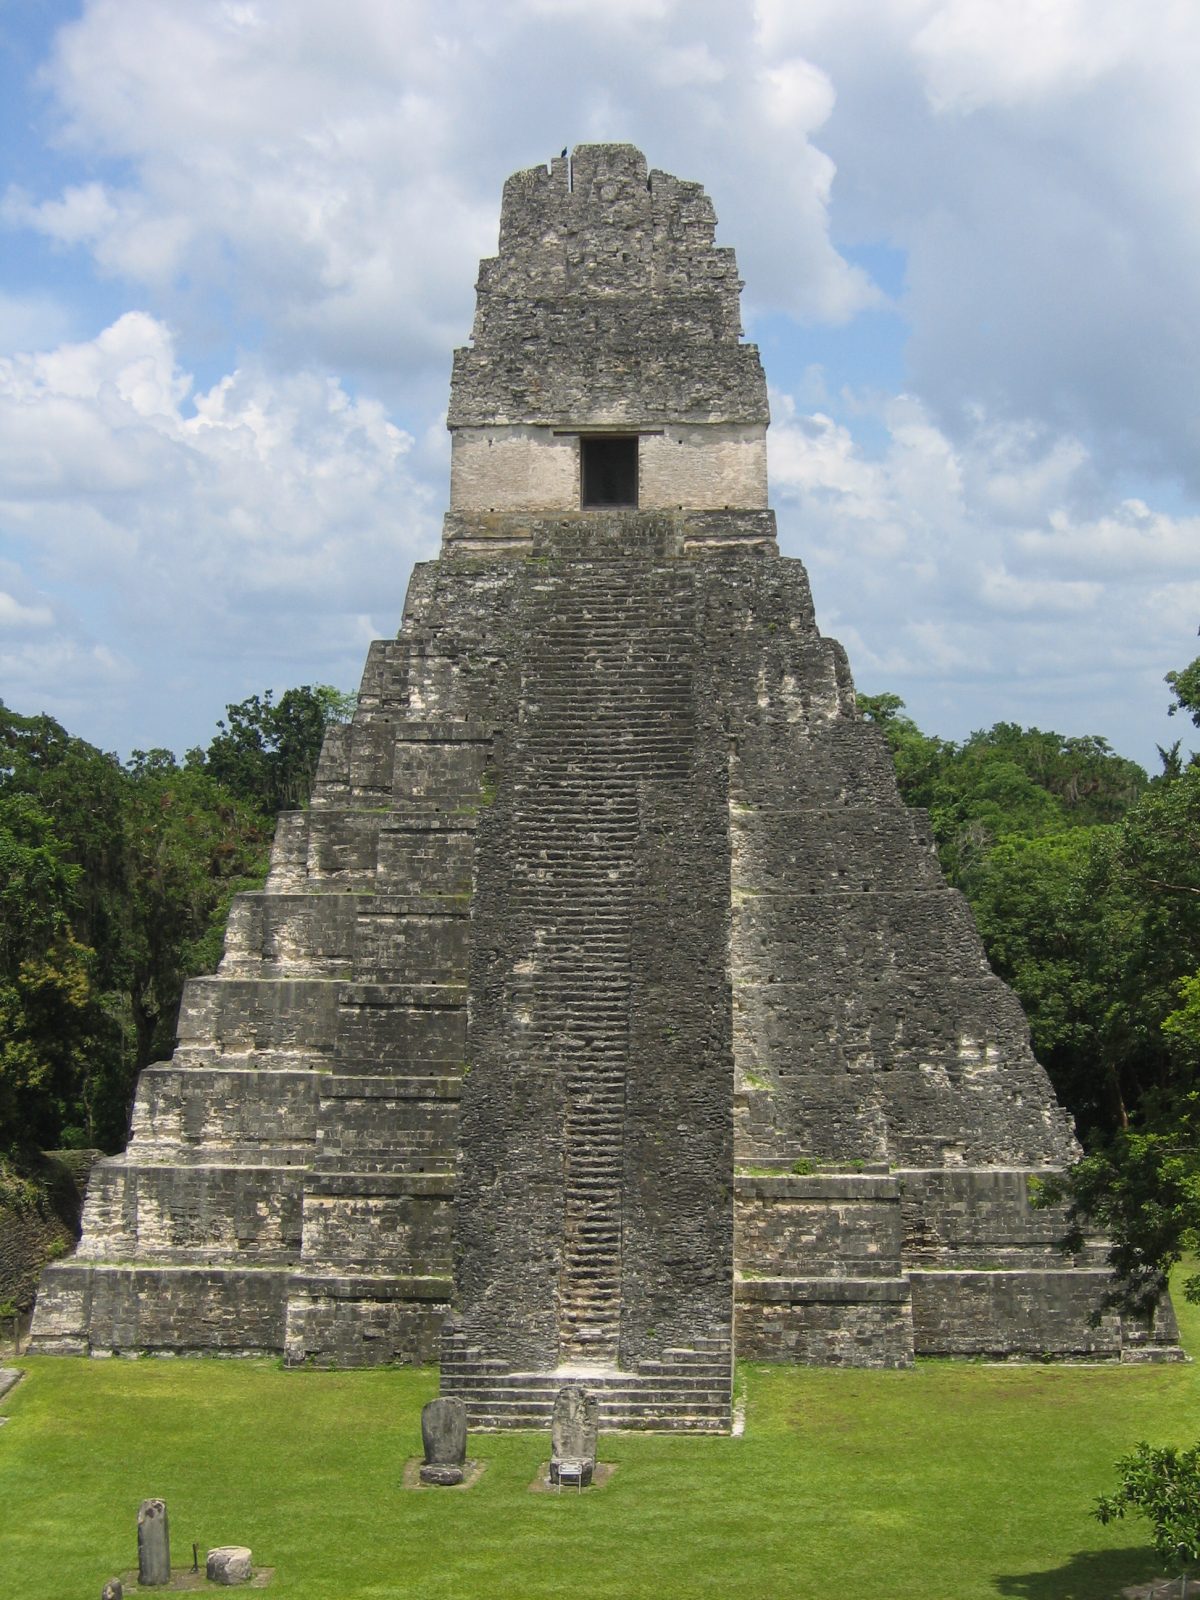 Tikal pyramids